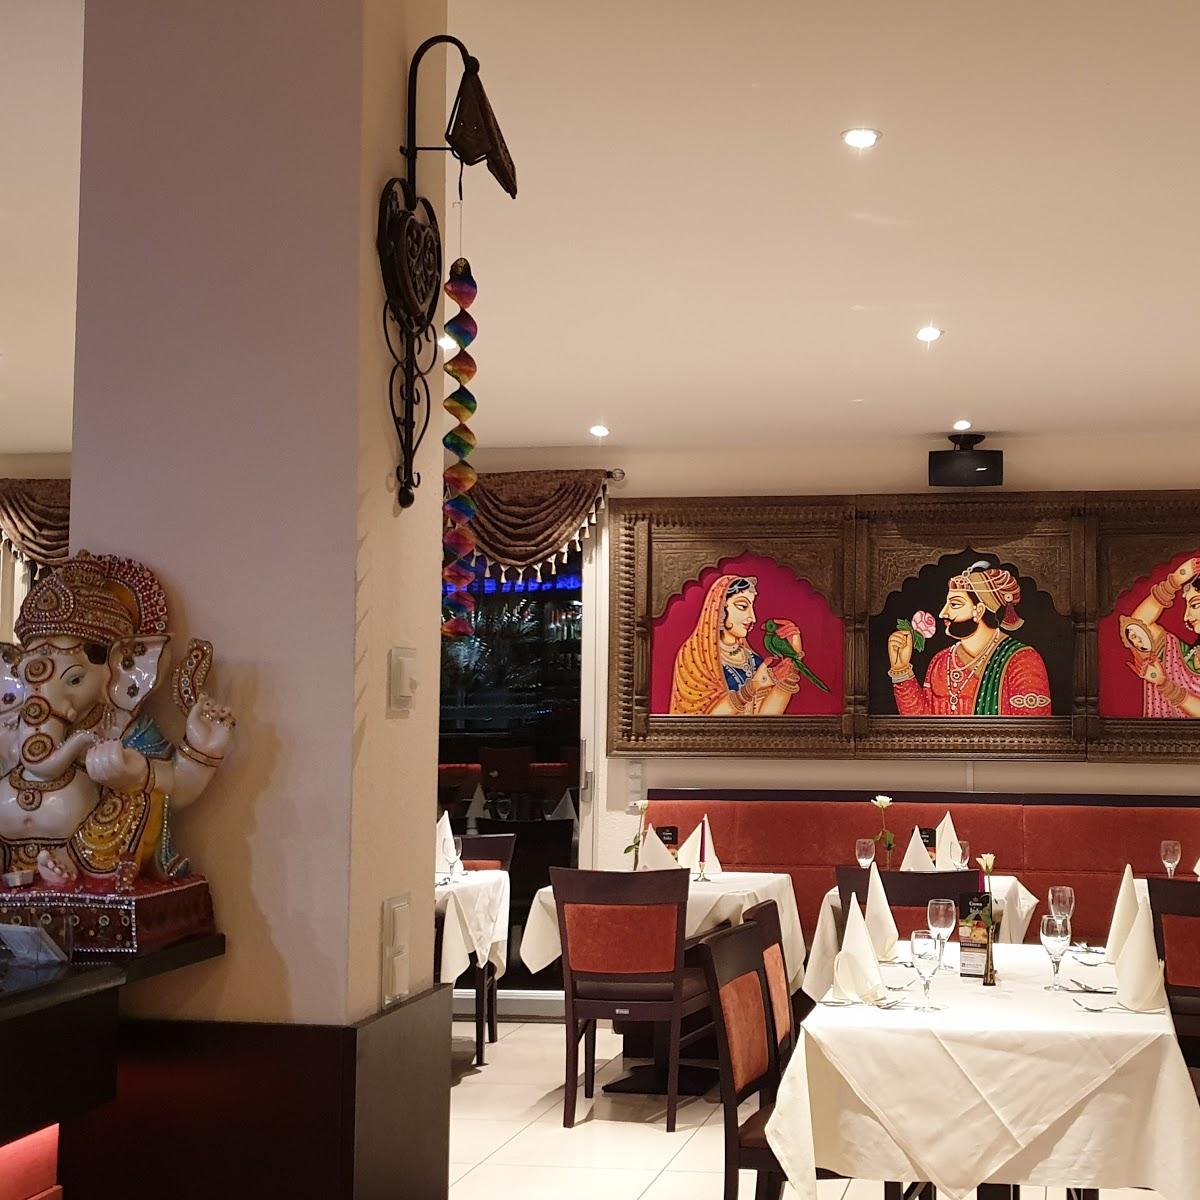 Restaurant "Crown of India Liederbach" in  Taunus